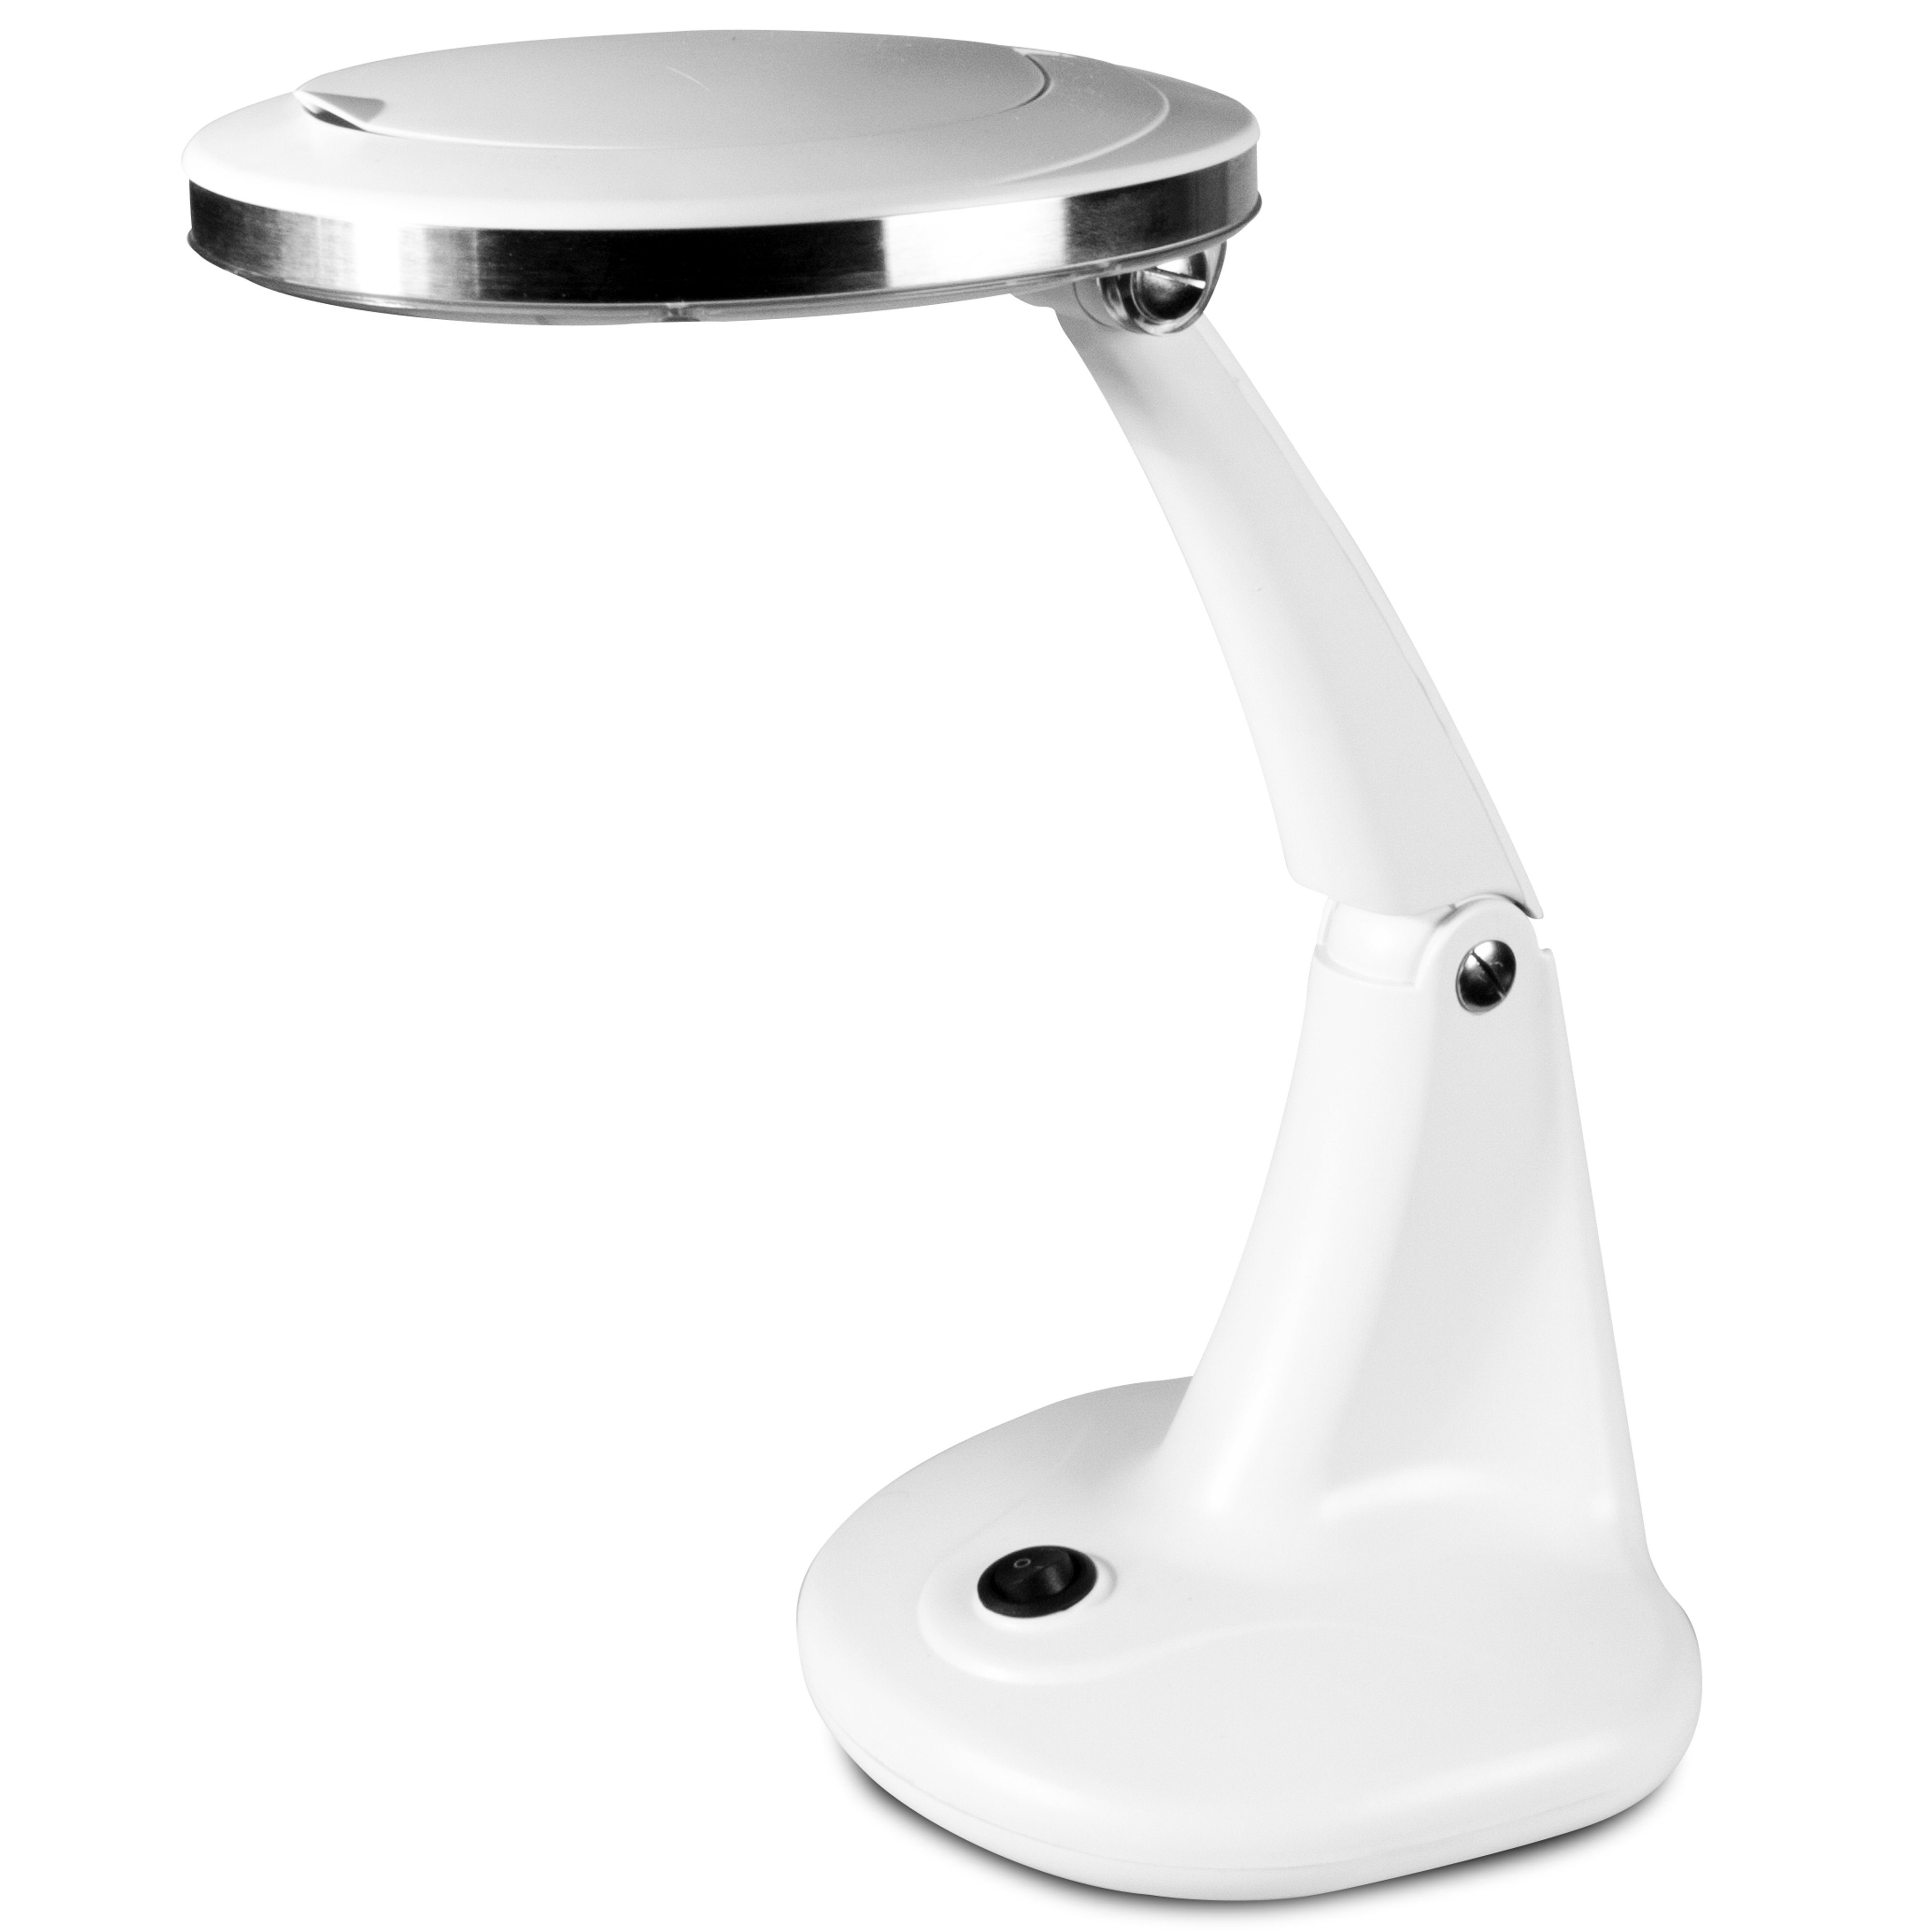 Fysic Schreibtisch Ideal auf Werkbank Tisch, den FL-30LED, Lupenlampe dem oder Einsatz für der